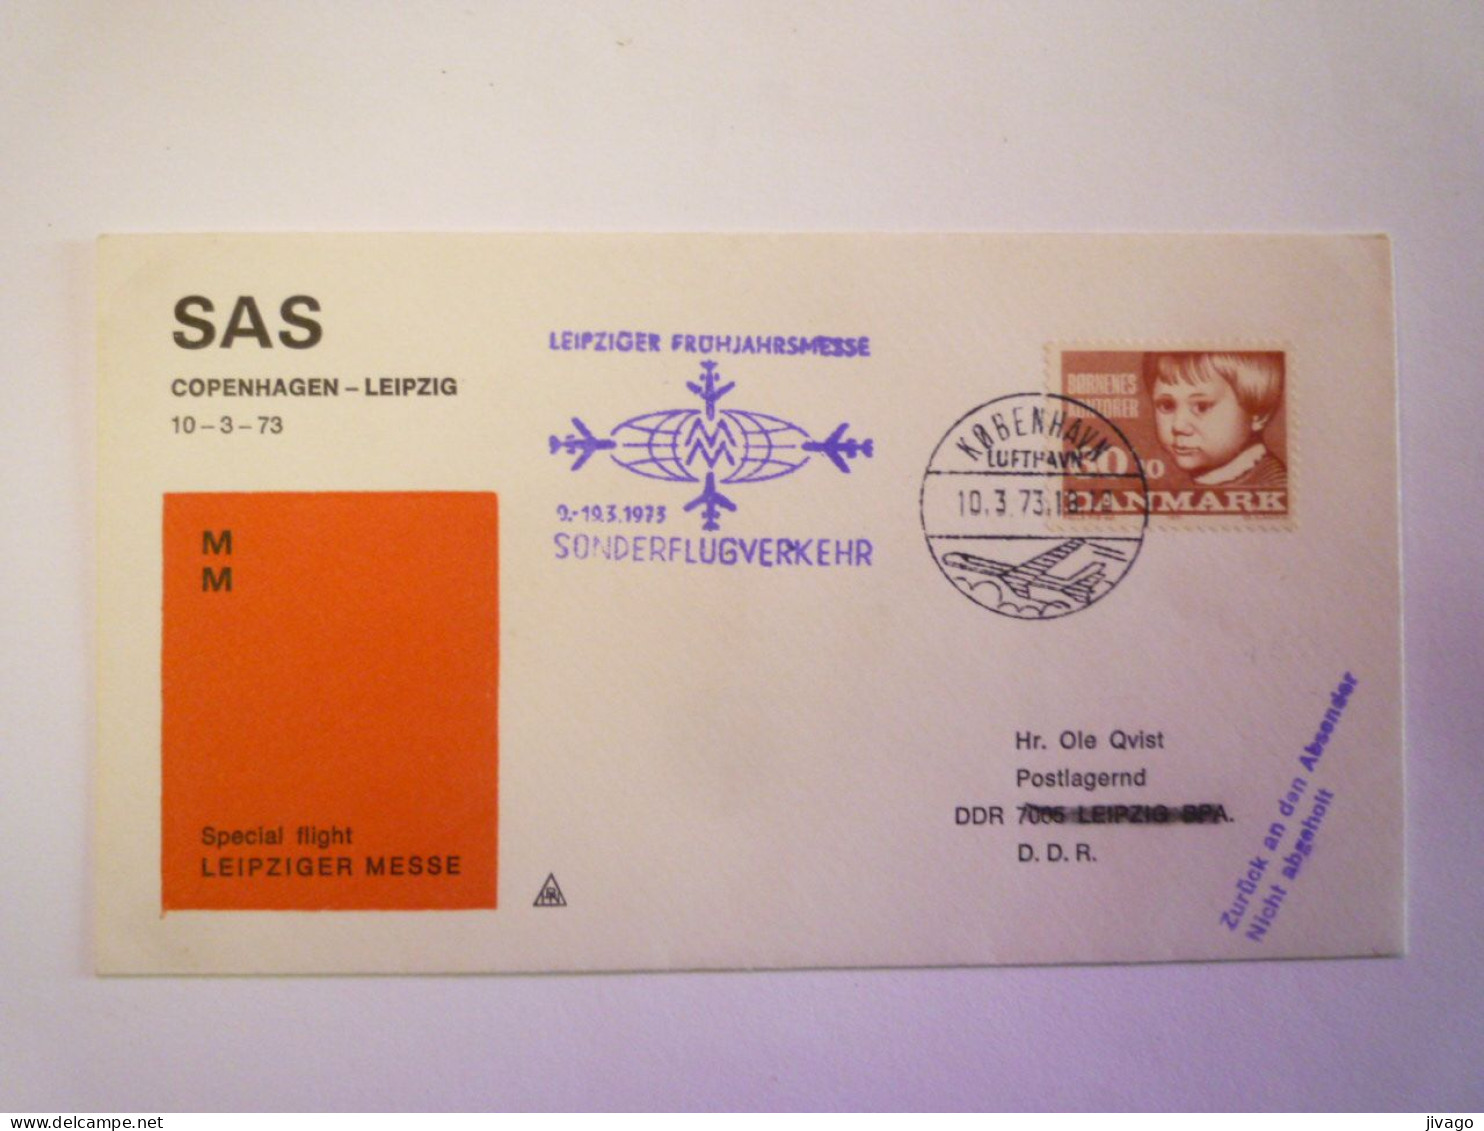 2024 - 609  SAS  COPENHAGEN  -  LEIPZIG  Special Flight  LEIPZIGER MESSE   1973    XXX - Luftpost